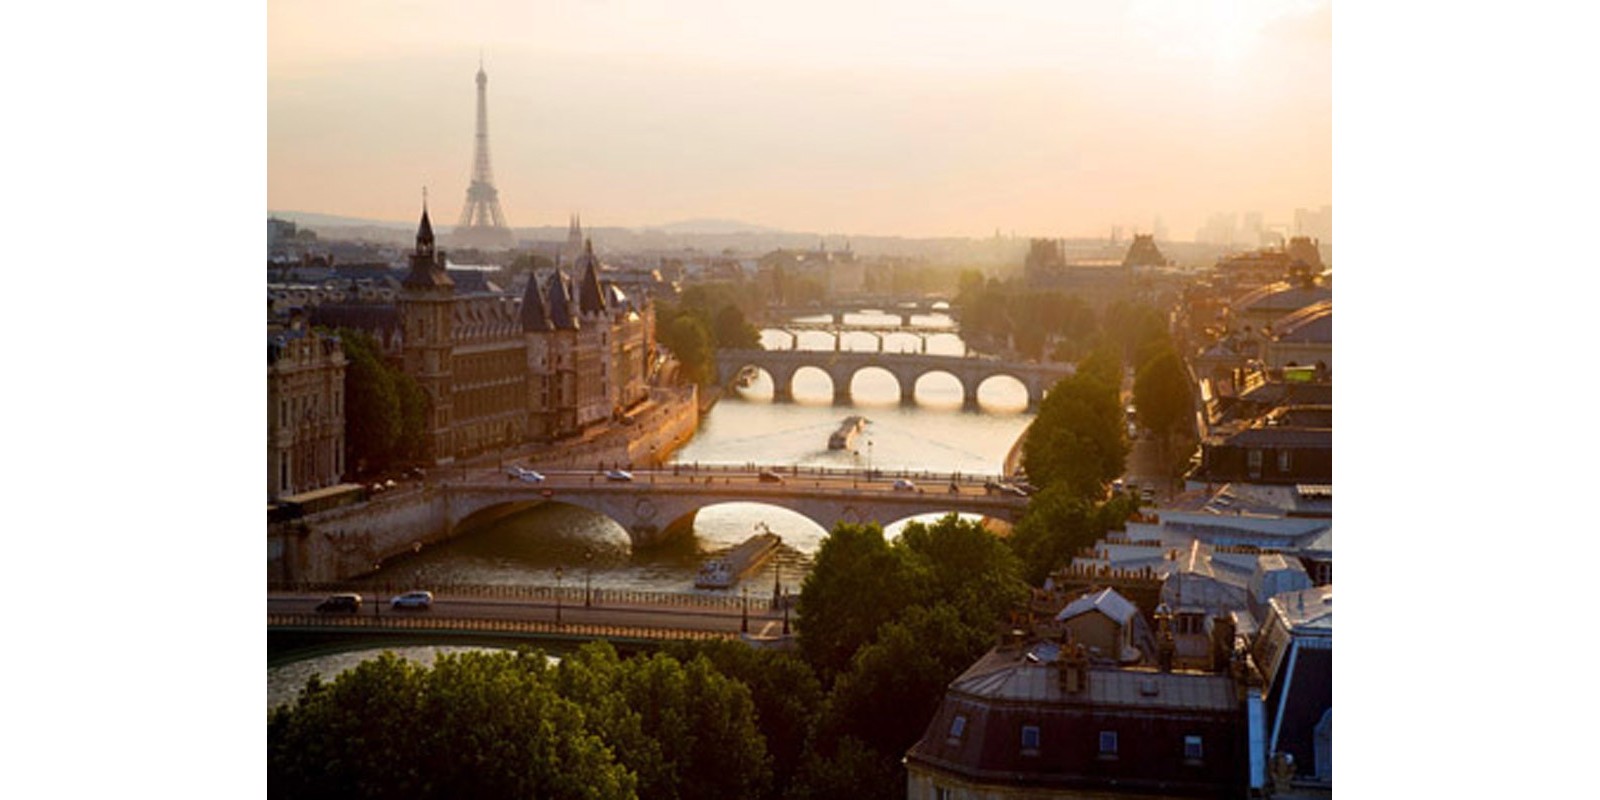 Michel Setboun - Bridges over the Seine river, Paris